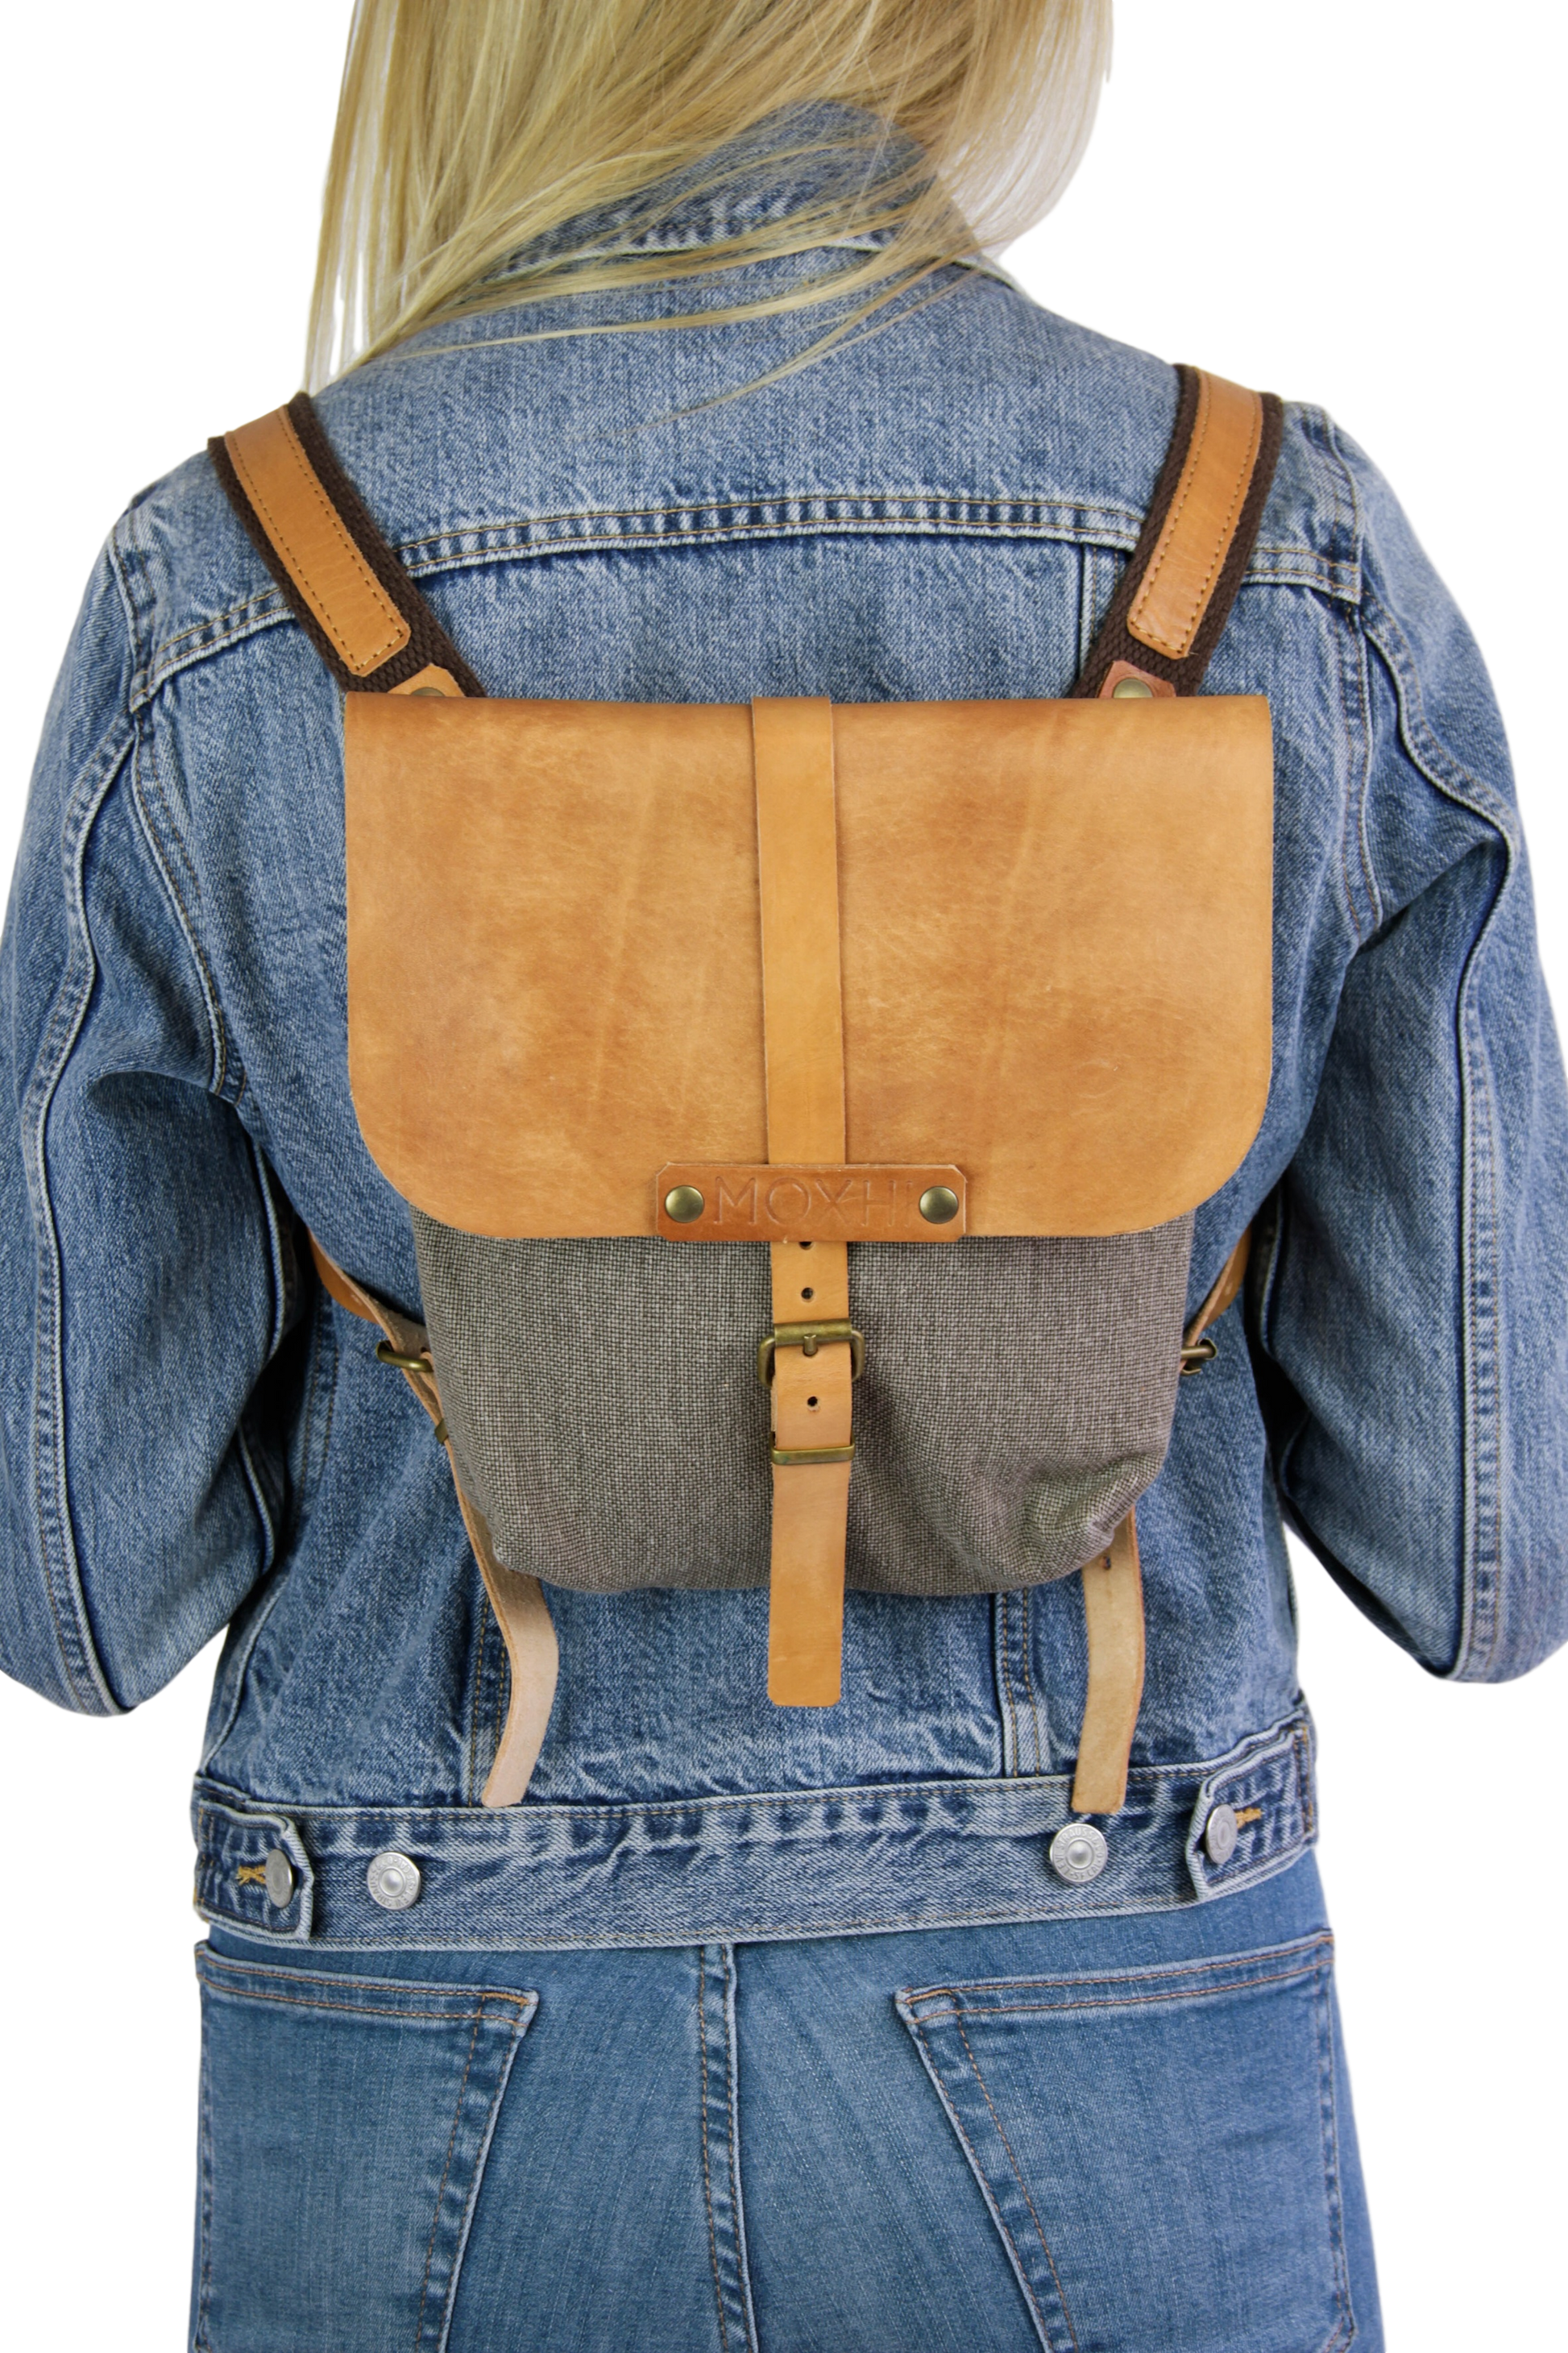 Handmade festival backpack